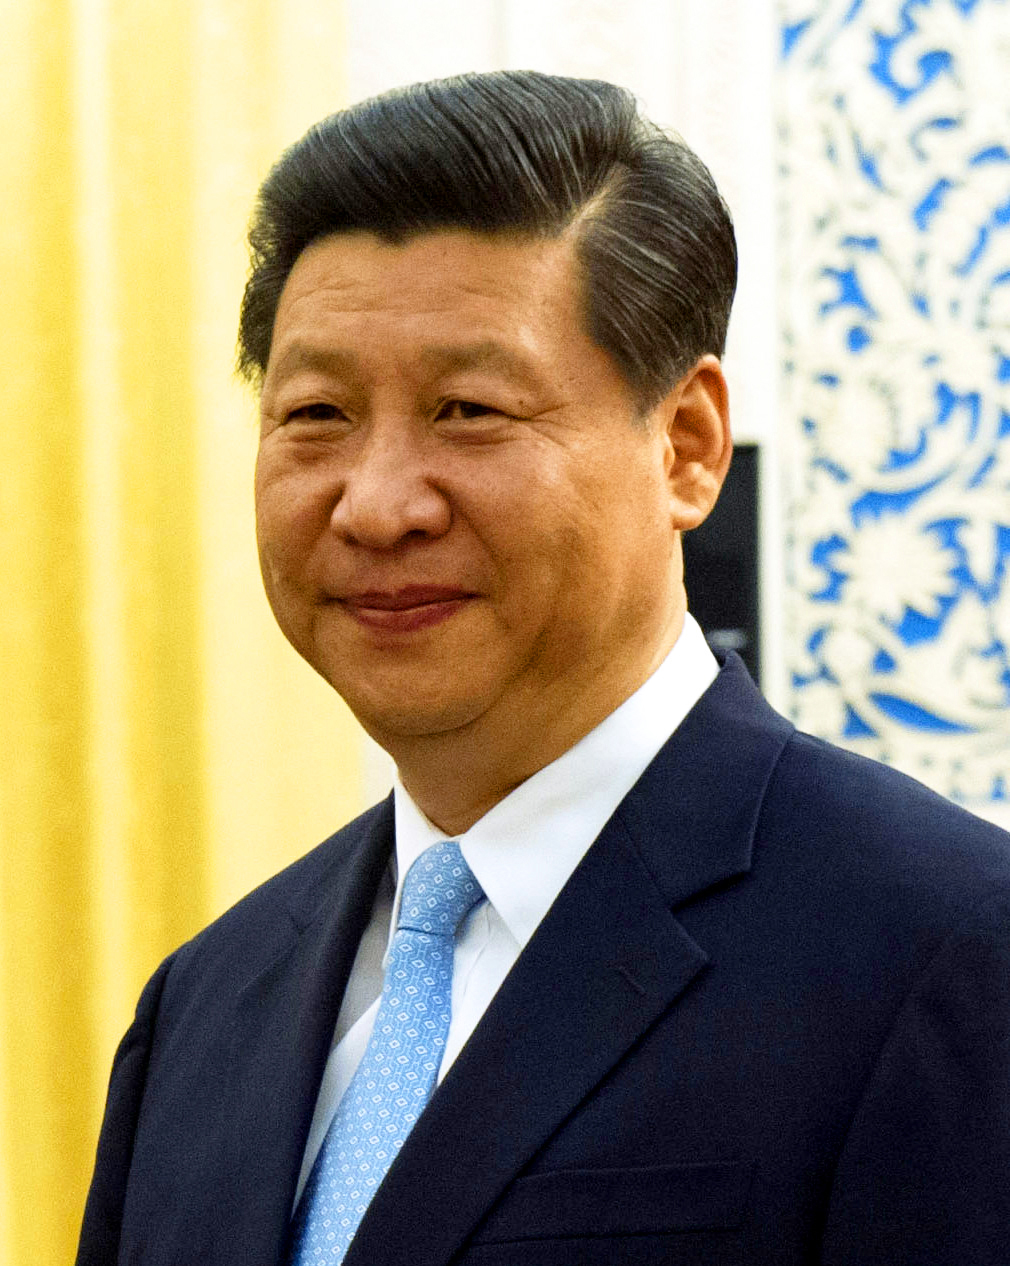 Xi_Jinping_Sept._19%2C_2012.jpg